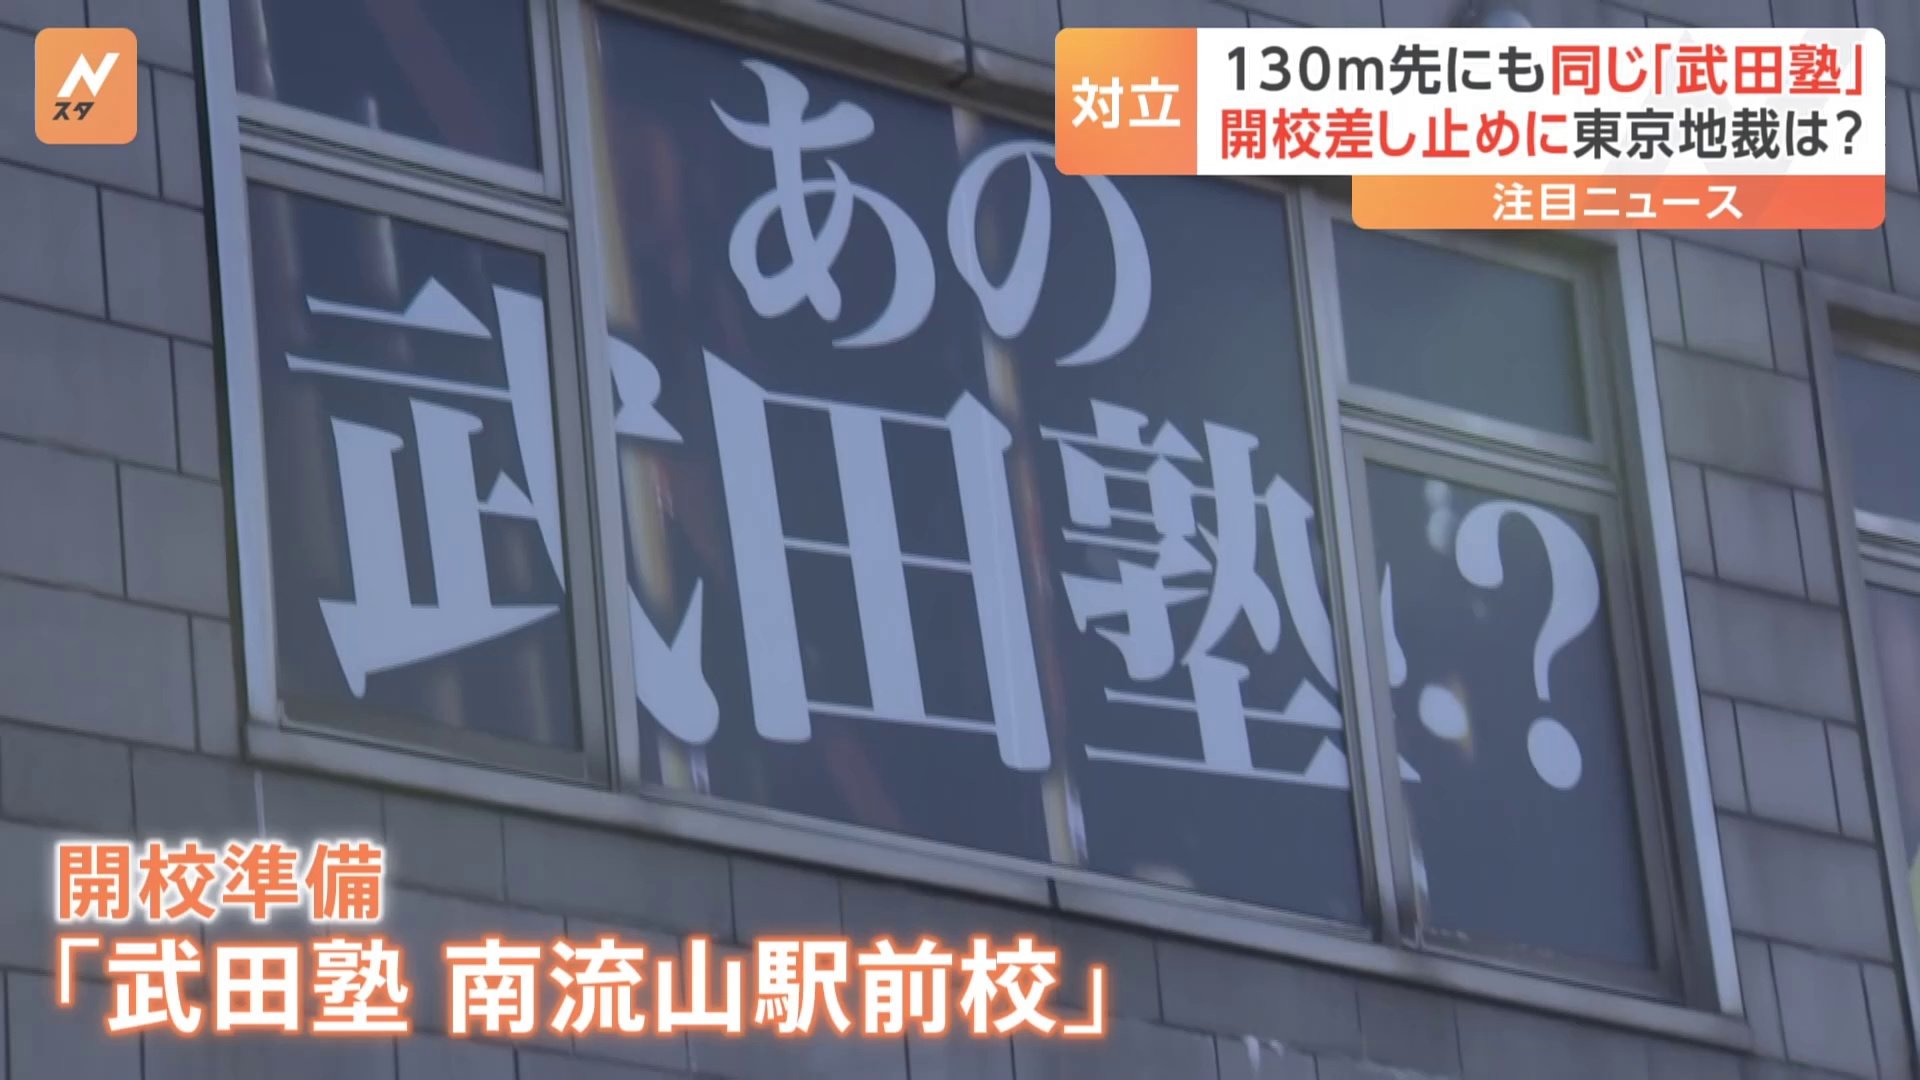 武田塾フランチャイズ校近くに直営校…東京地裁が開校差し止め仮処分　「フランチャイズ業界全体にとって希望となる画期的なもの」